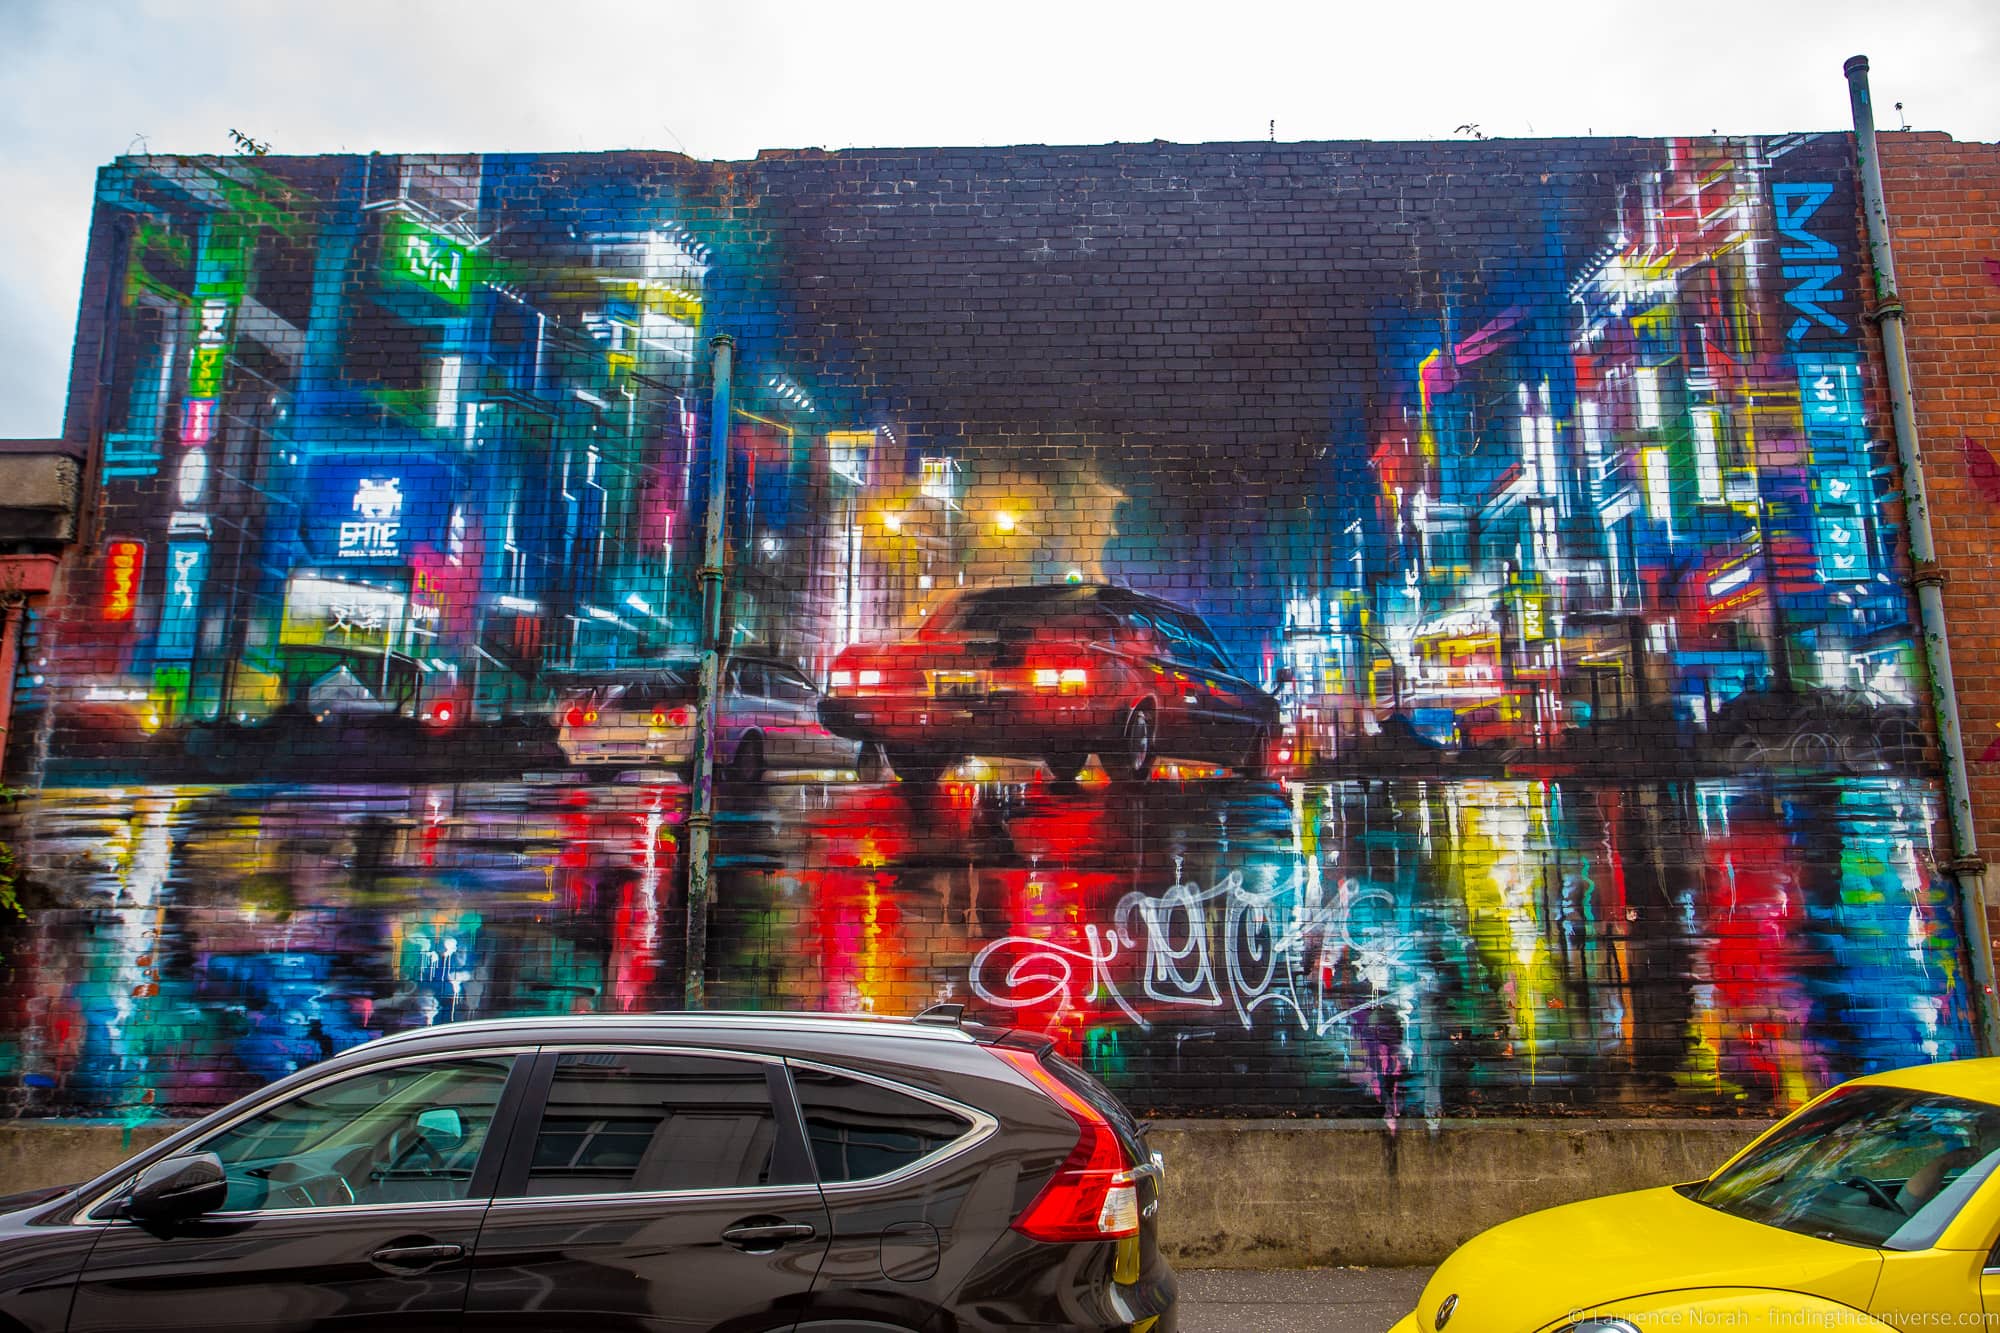 A Tour of The Street Art of Belfast